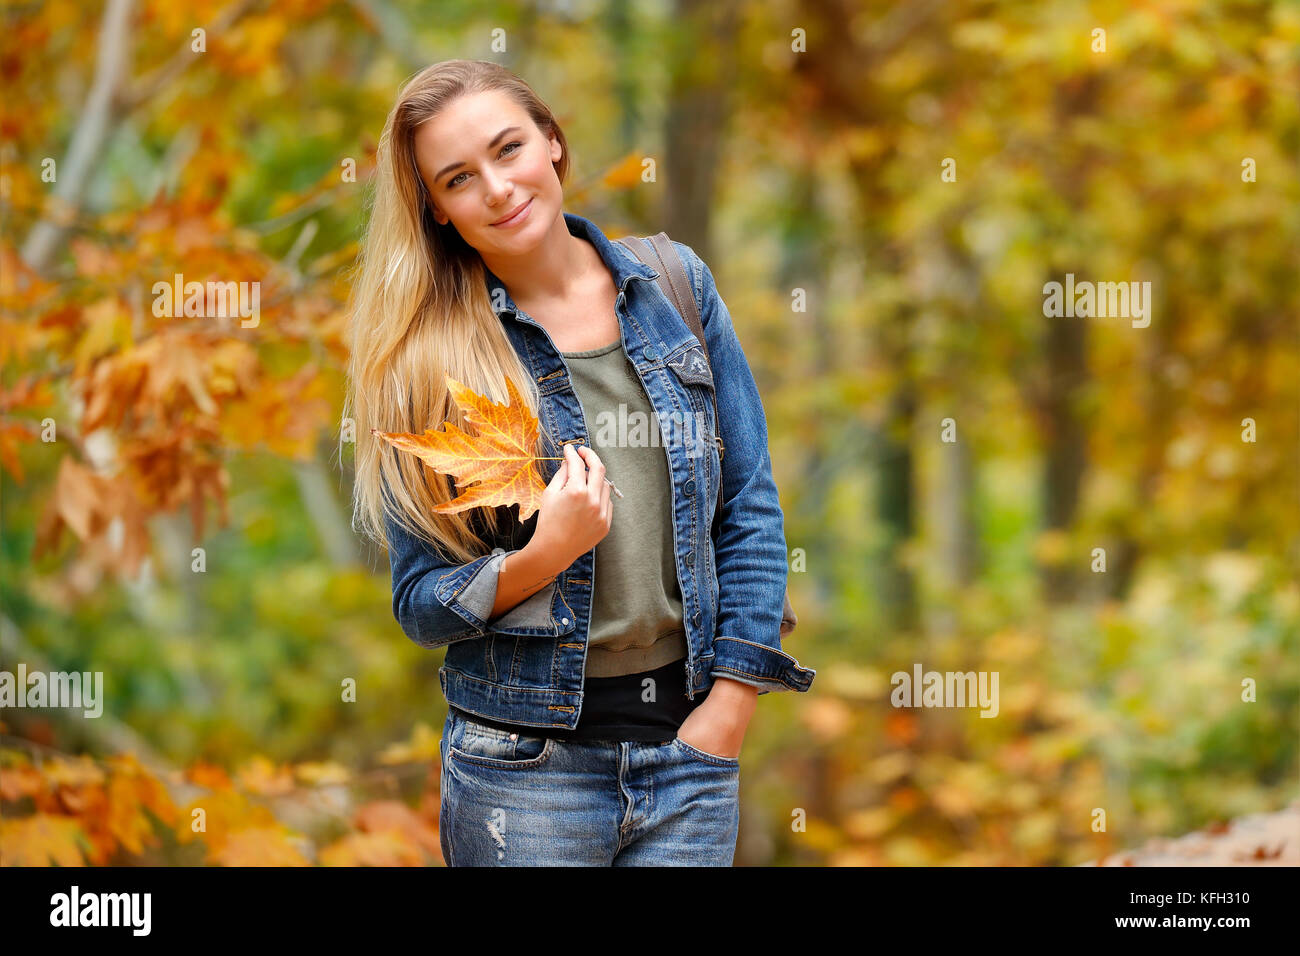 Schöne Frau Wandern im Herbst park mit trockenen Baum Blatt in der Hand, Fallen genießen Urlaub, Tag im Wald Stockfoto